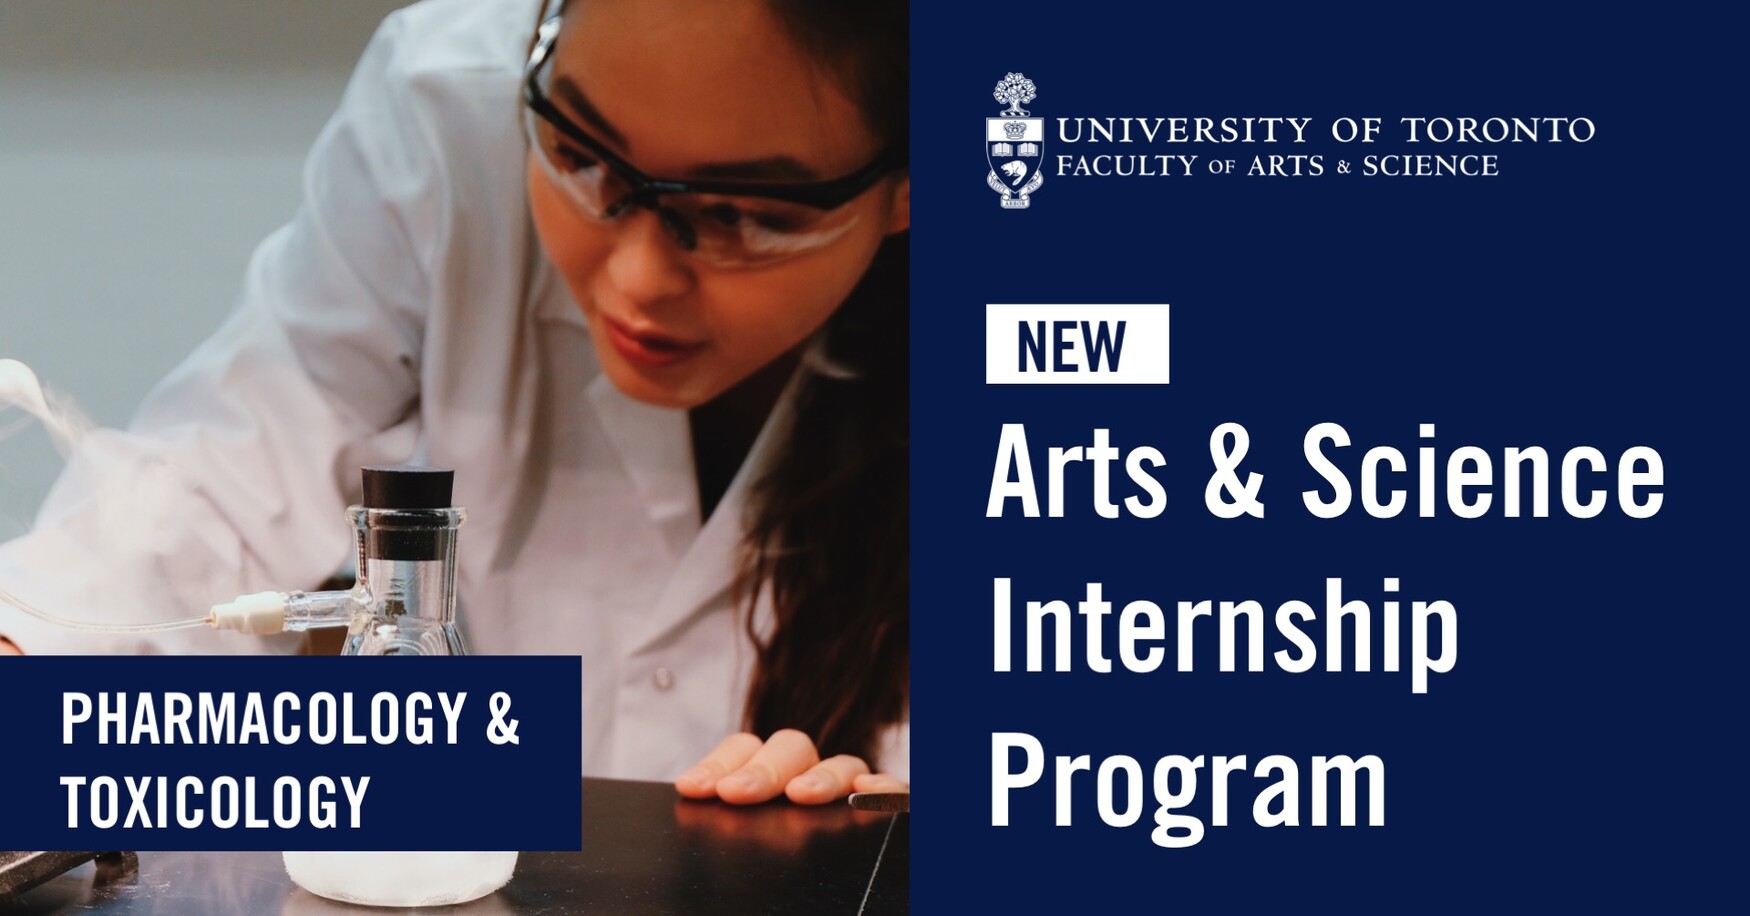 Arts & Science Internship Program